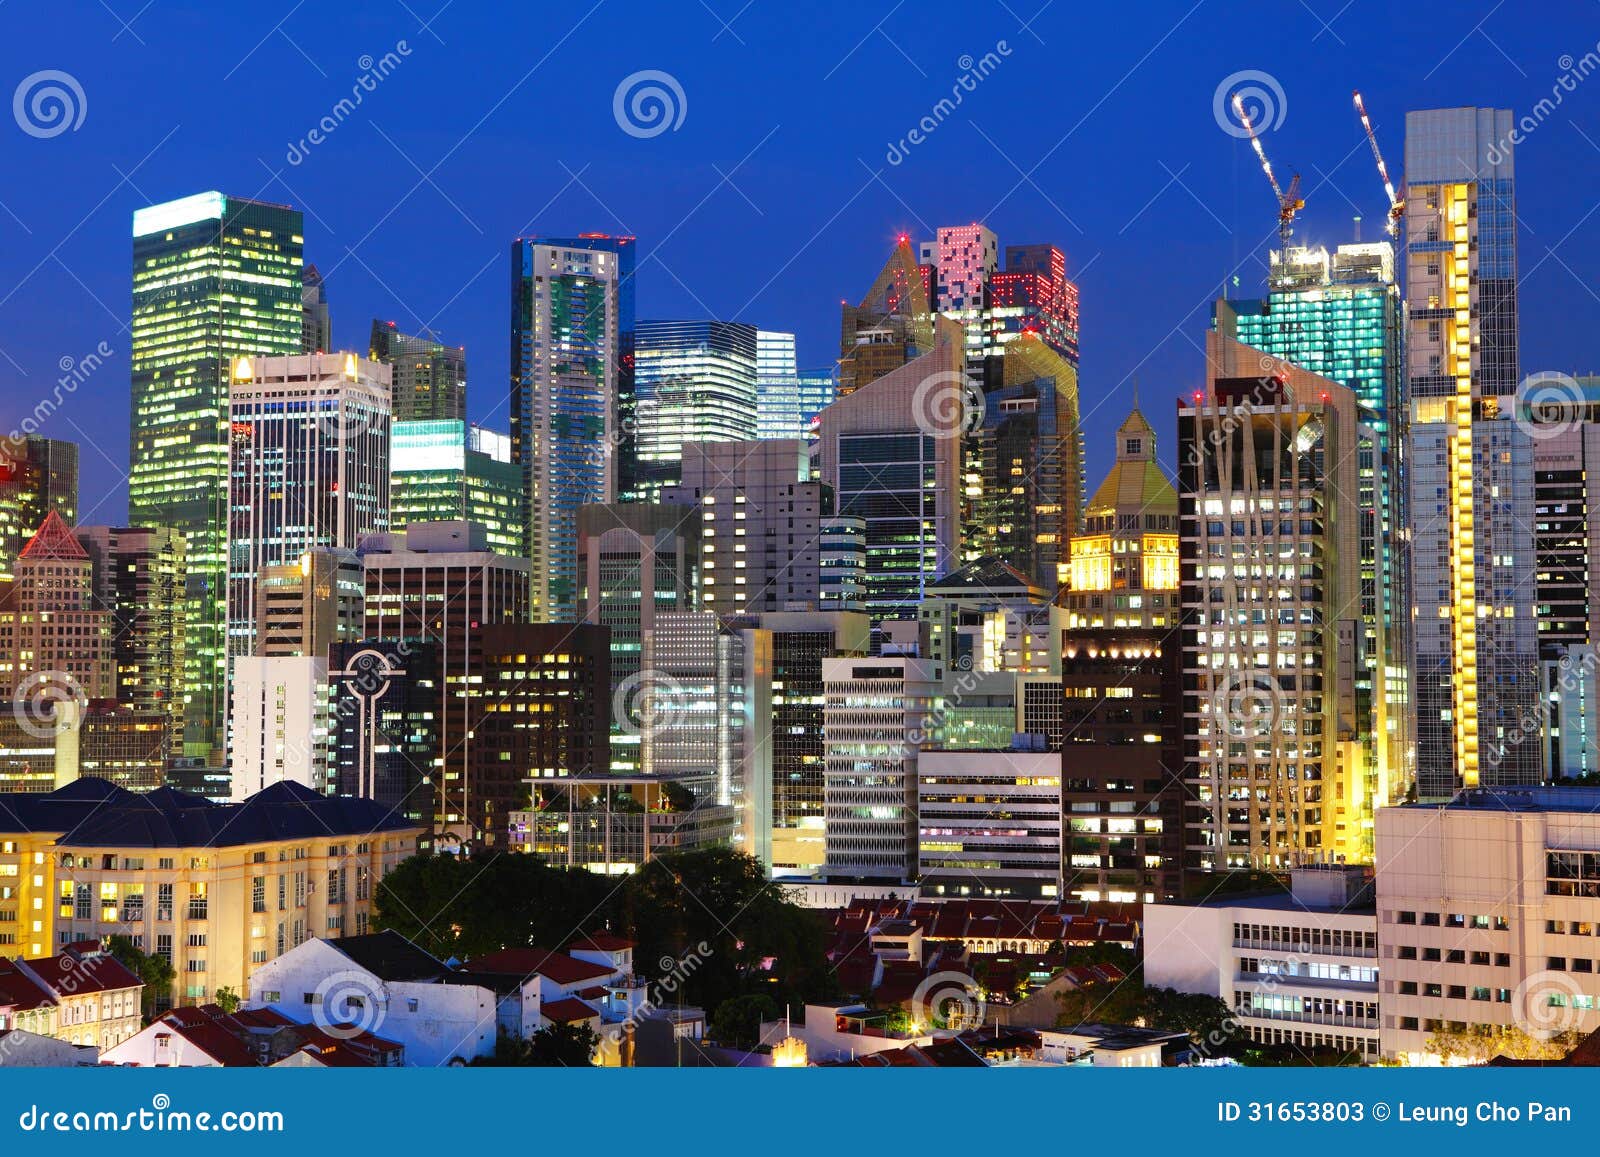 Singapore City At Night Stock Photos - Image: 31653803